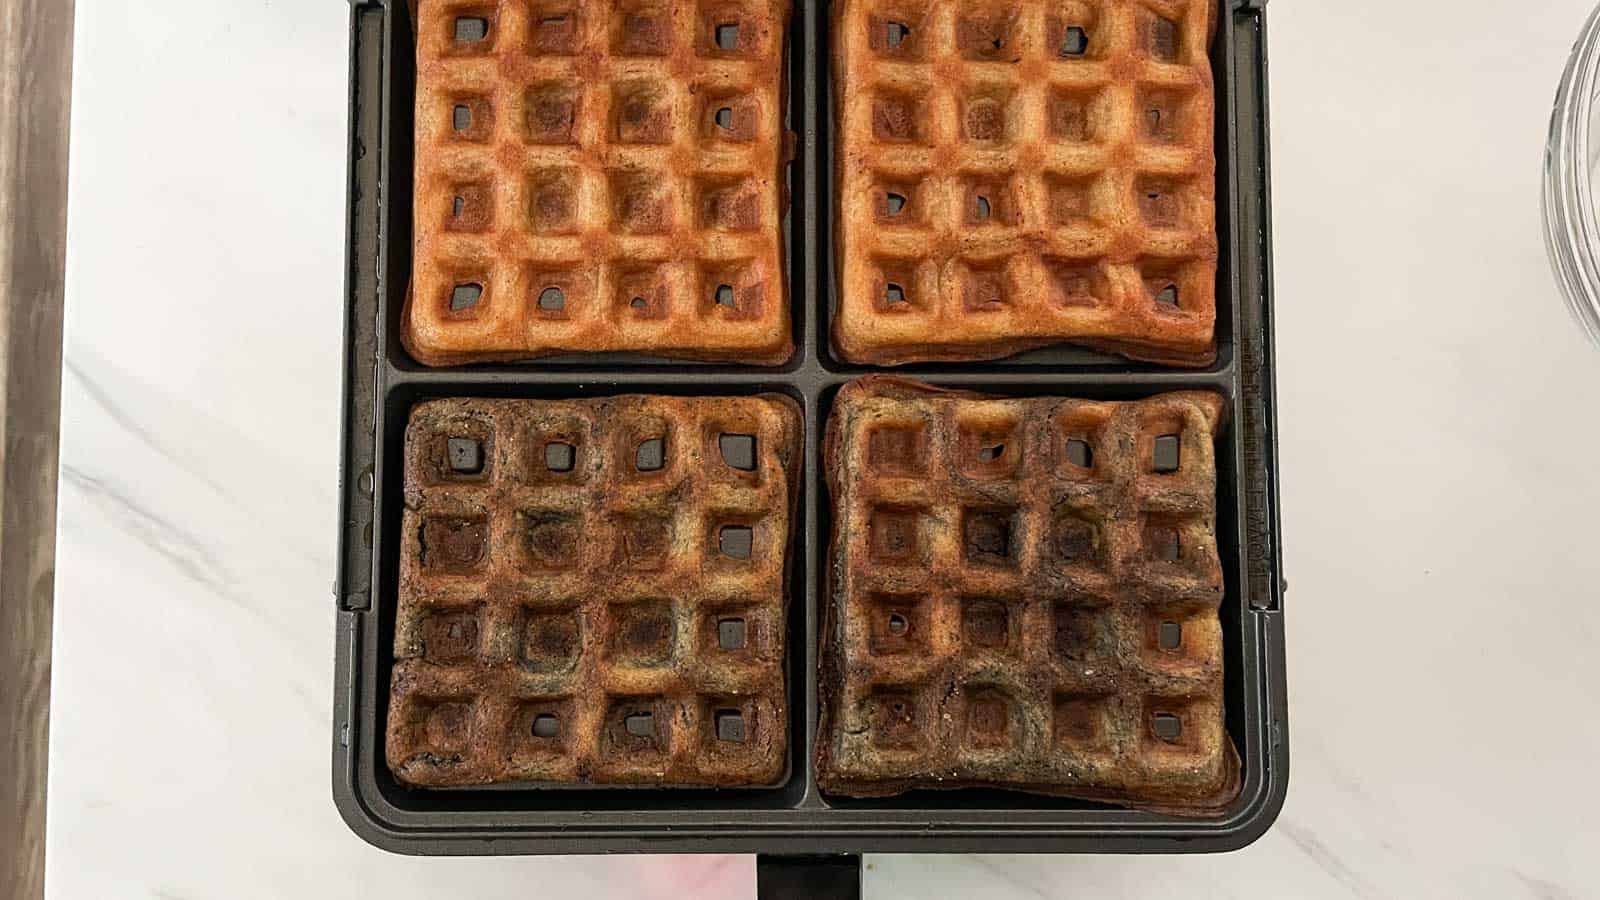 Test batch of waffles